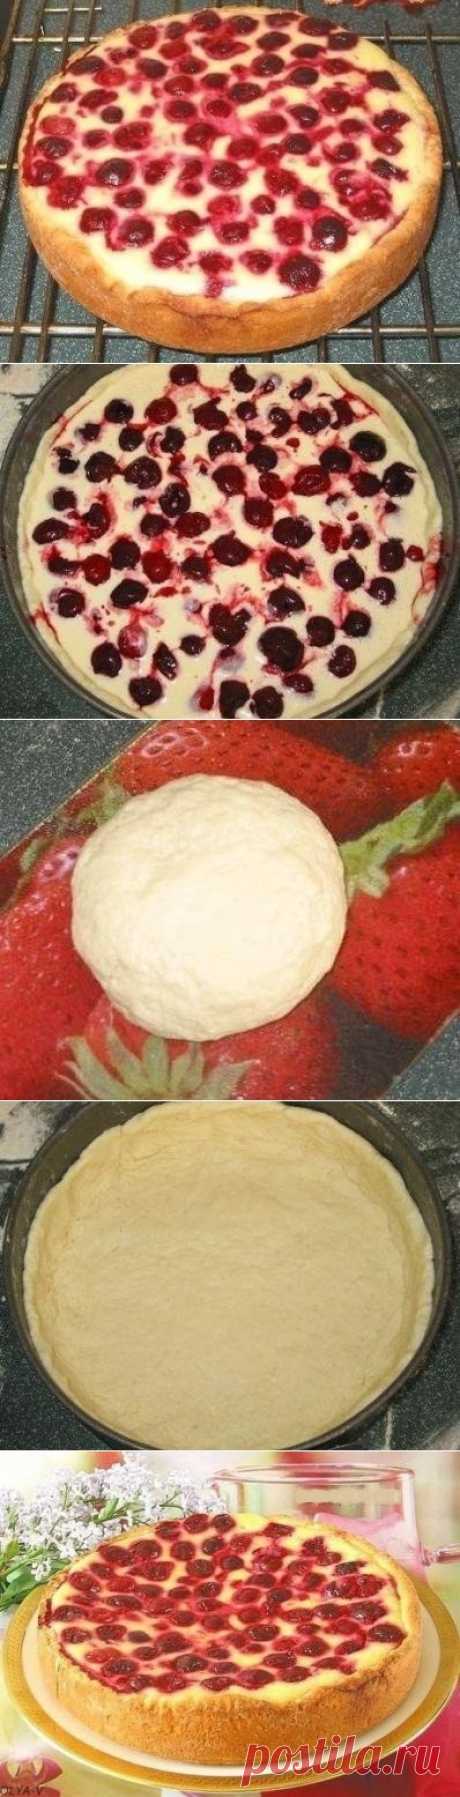 Как приготовить пирог-сметанник с ягодами - рецепт, ингридиенты и фотографии